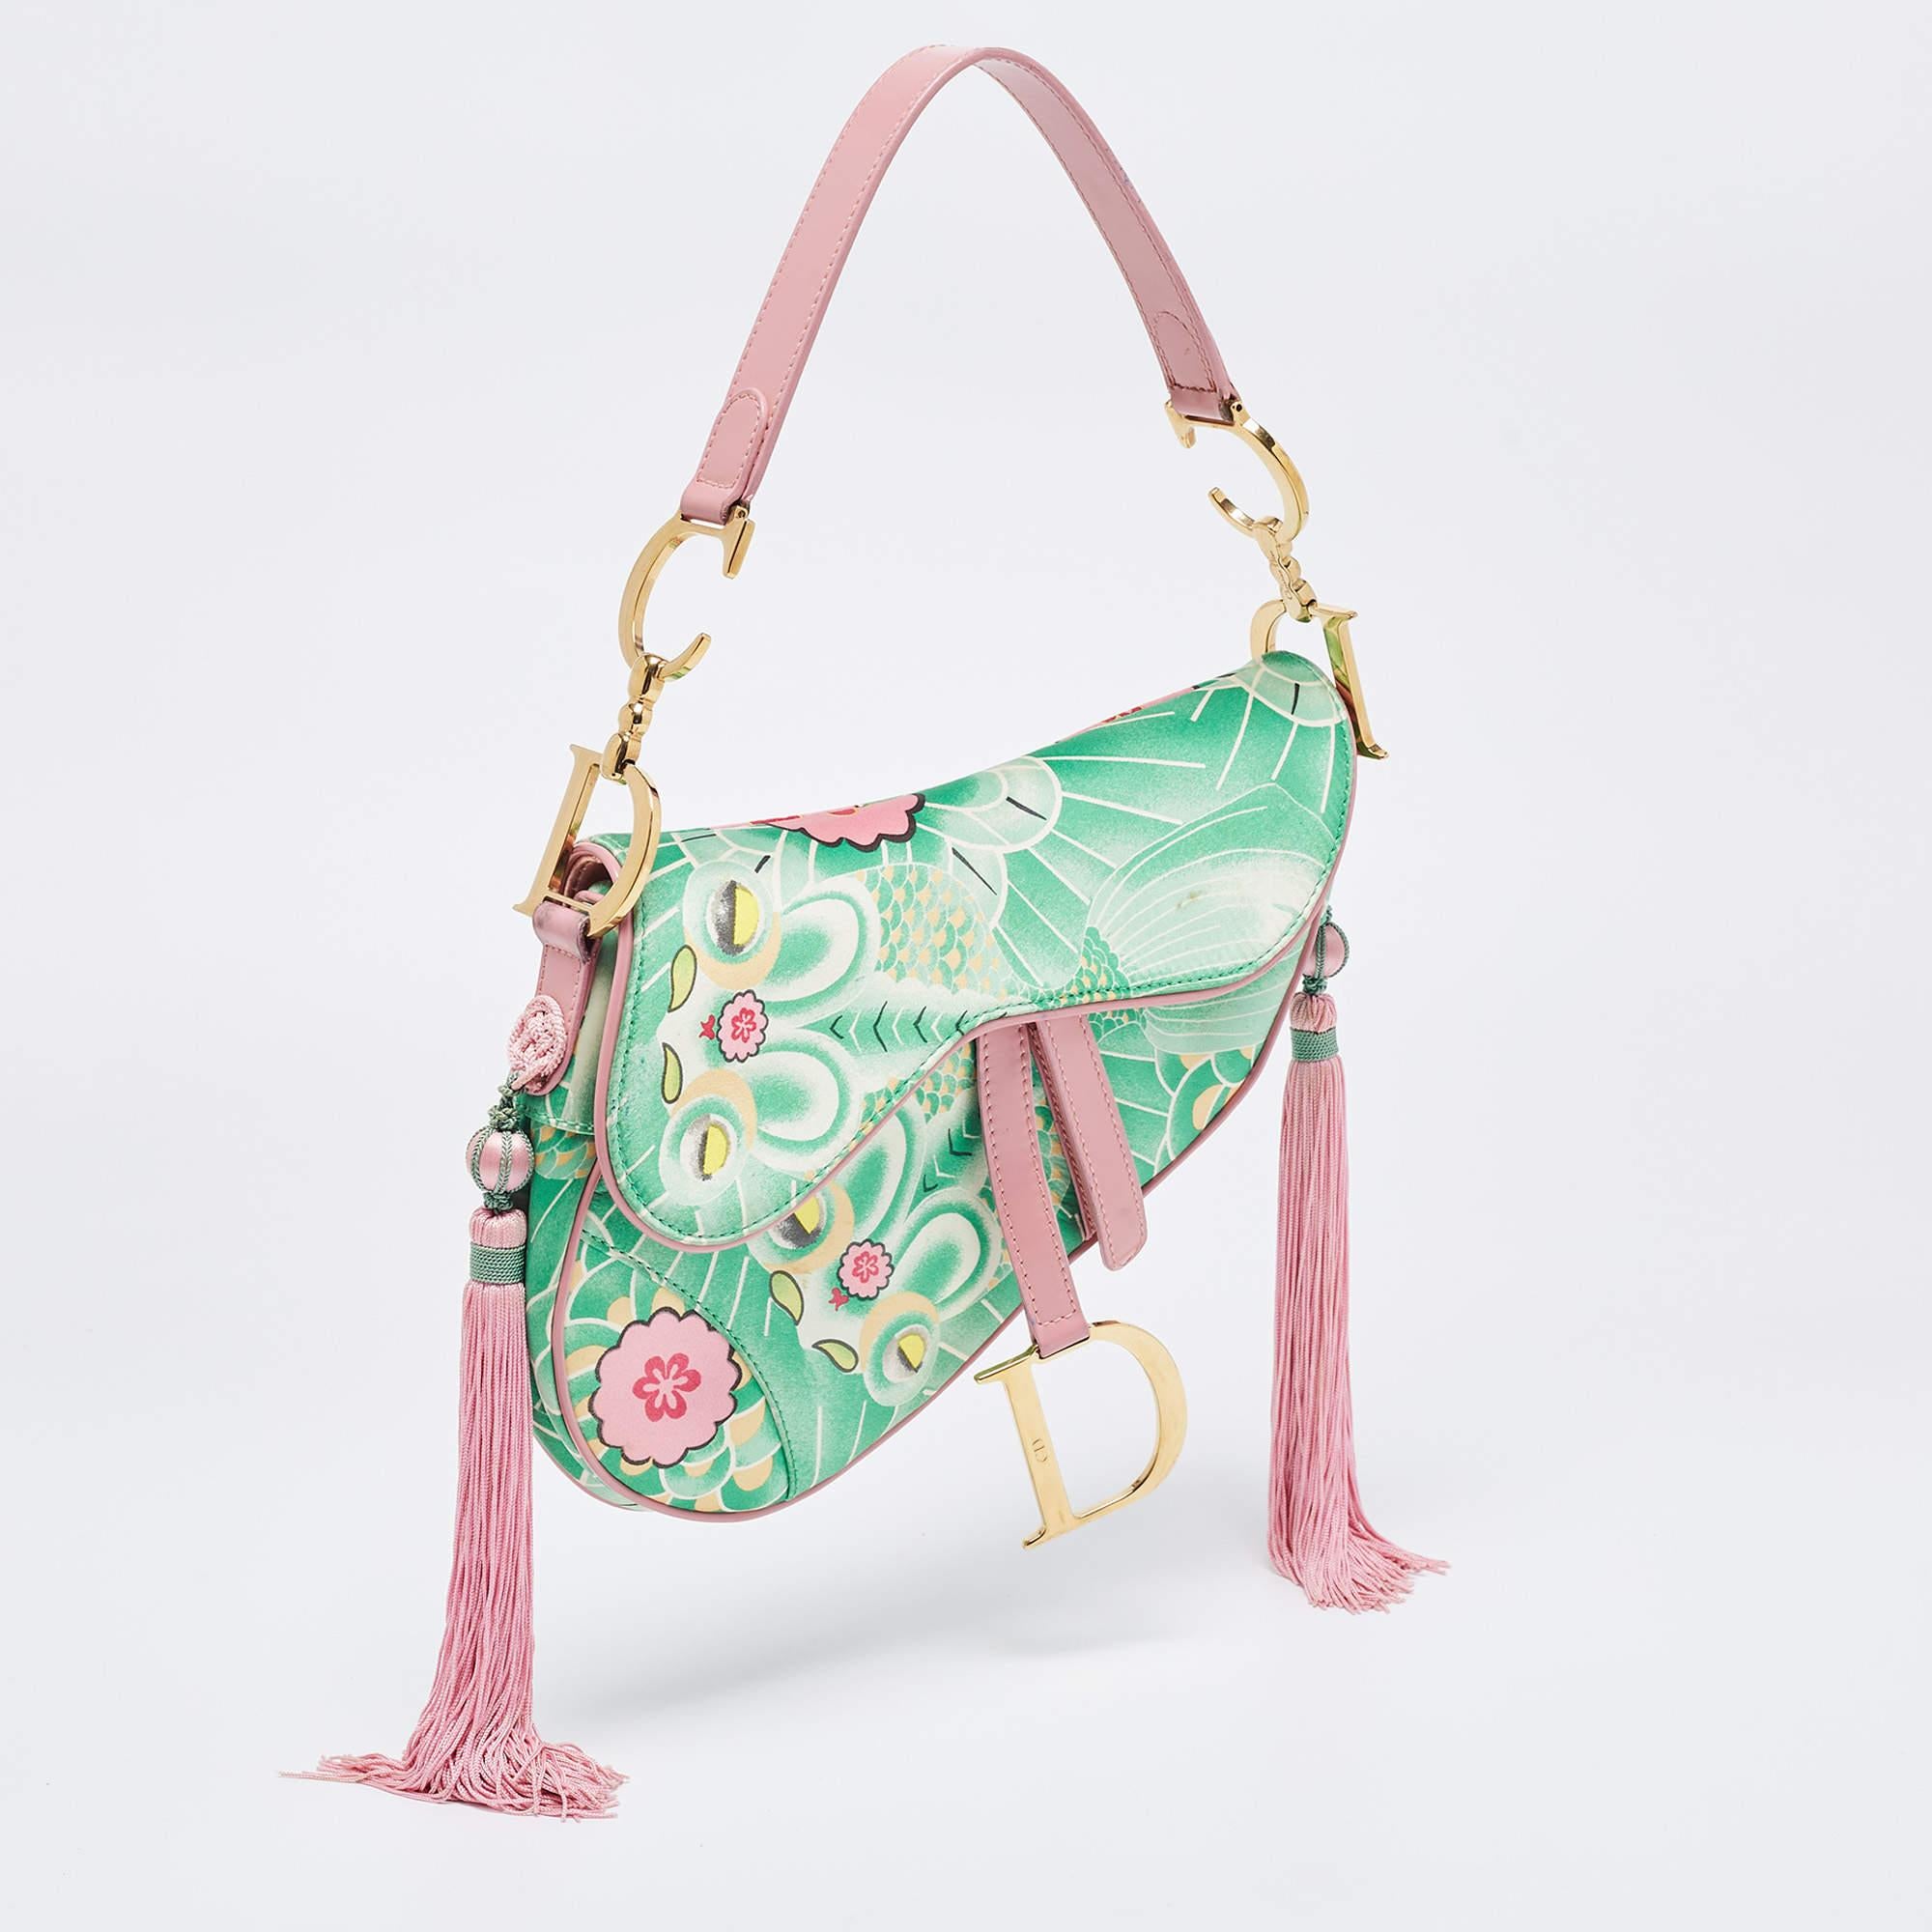 Die von John Galliano entworfene Dior-Satteltasche ist eine investitionswürdige Kreation und eine Ikone in der Welt der Handtaschen. Hier haben wir eine limitierte Version der Tasche mit dem Namen 